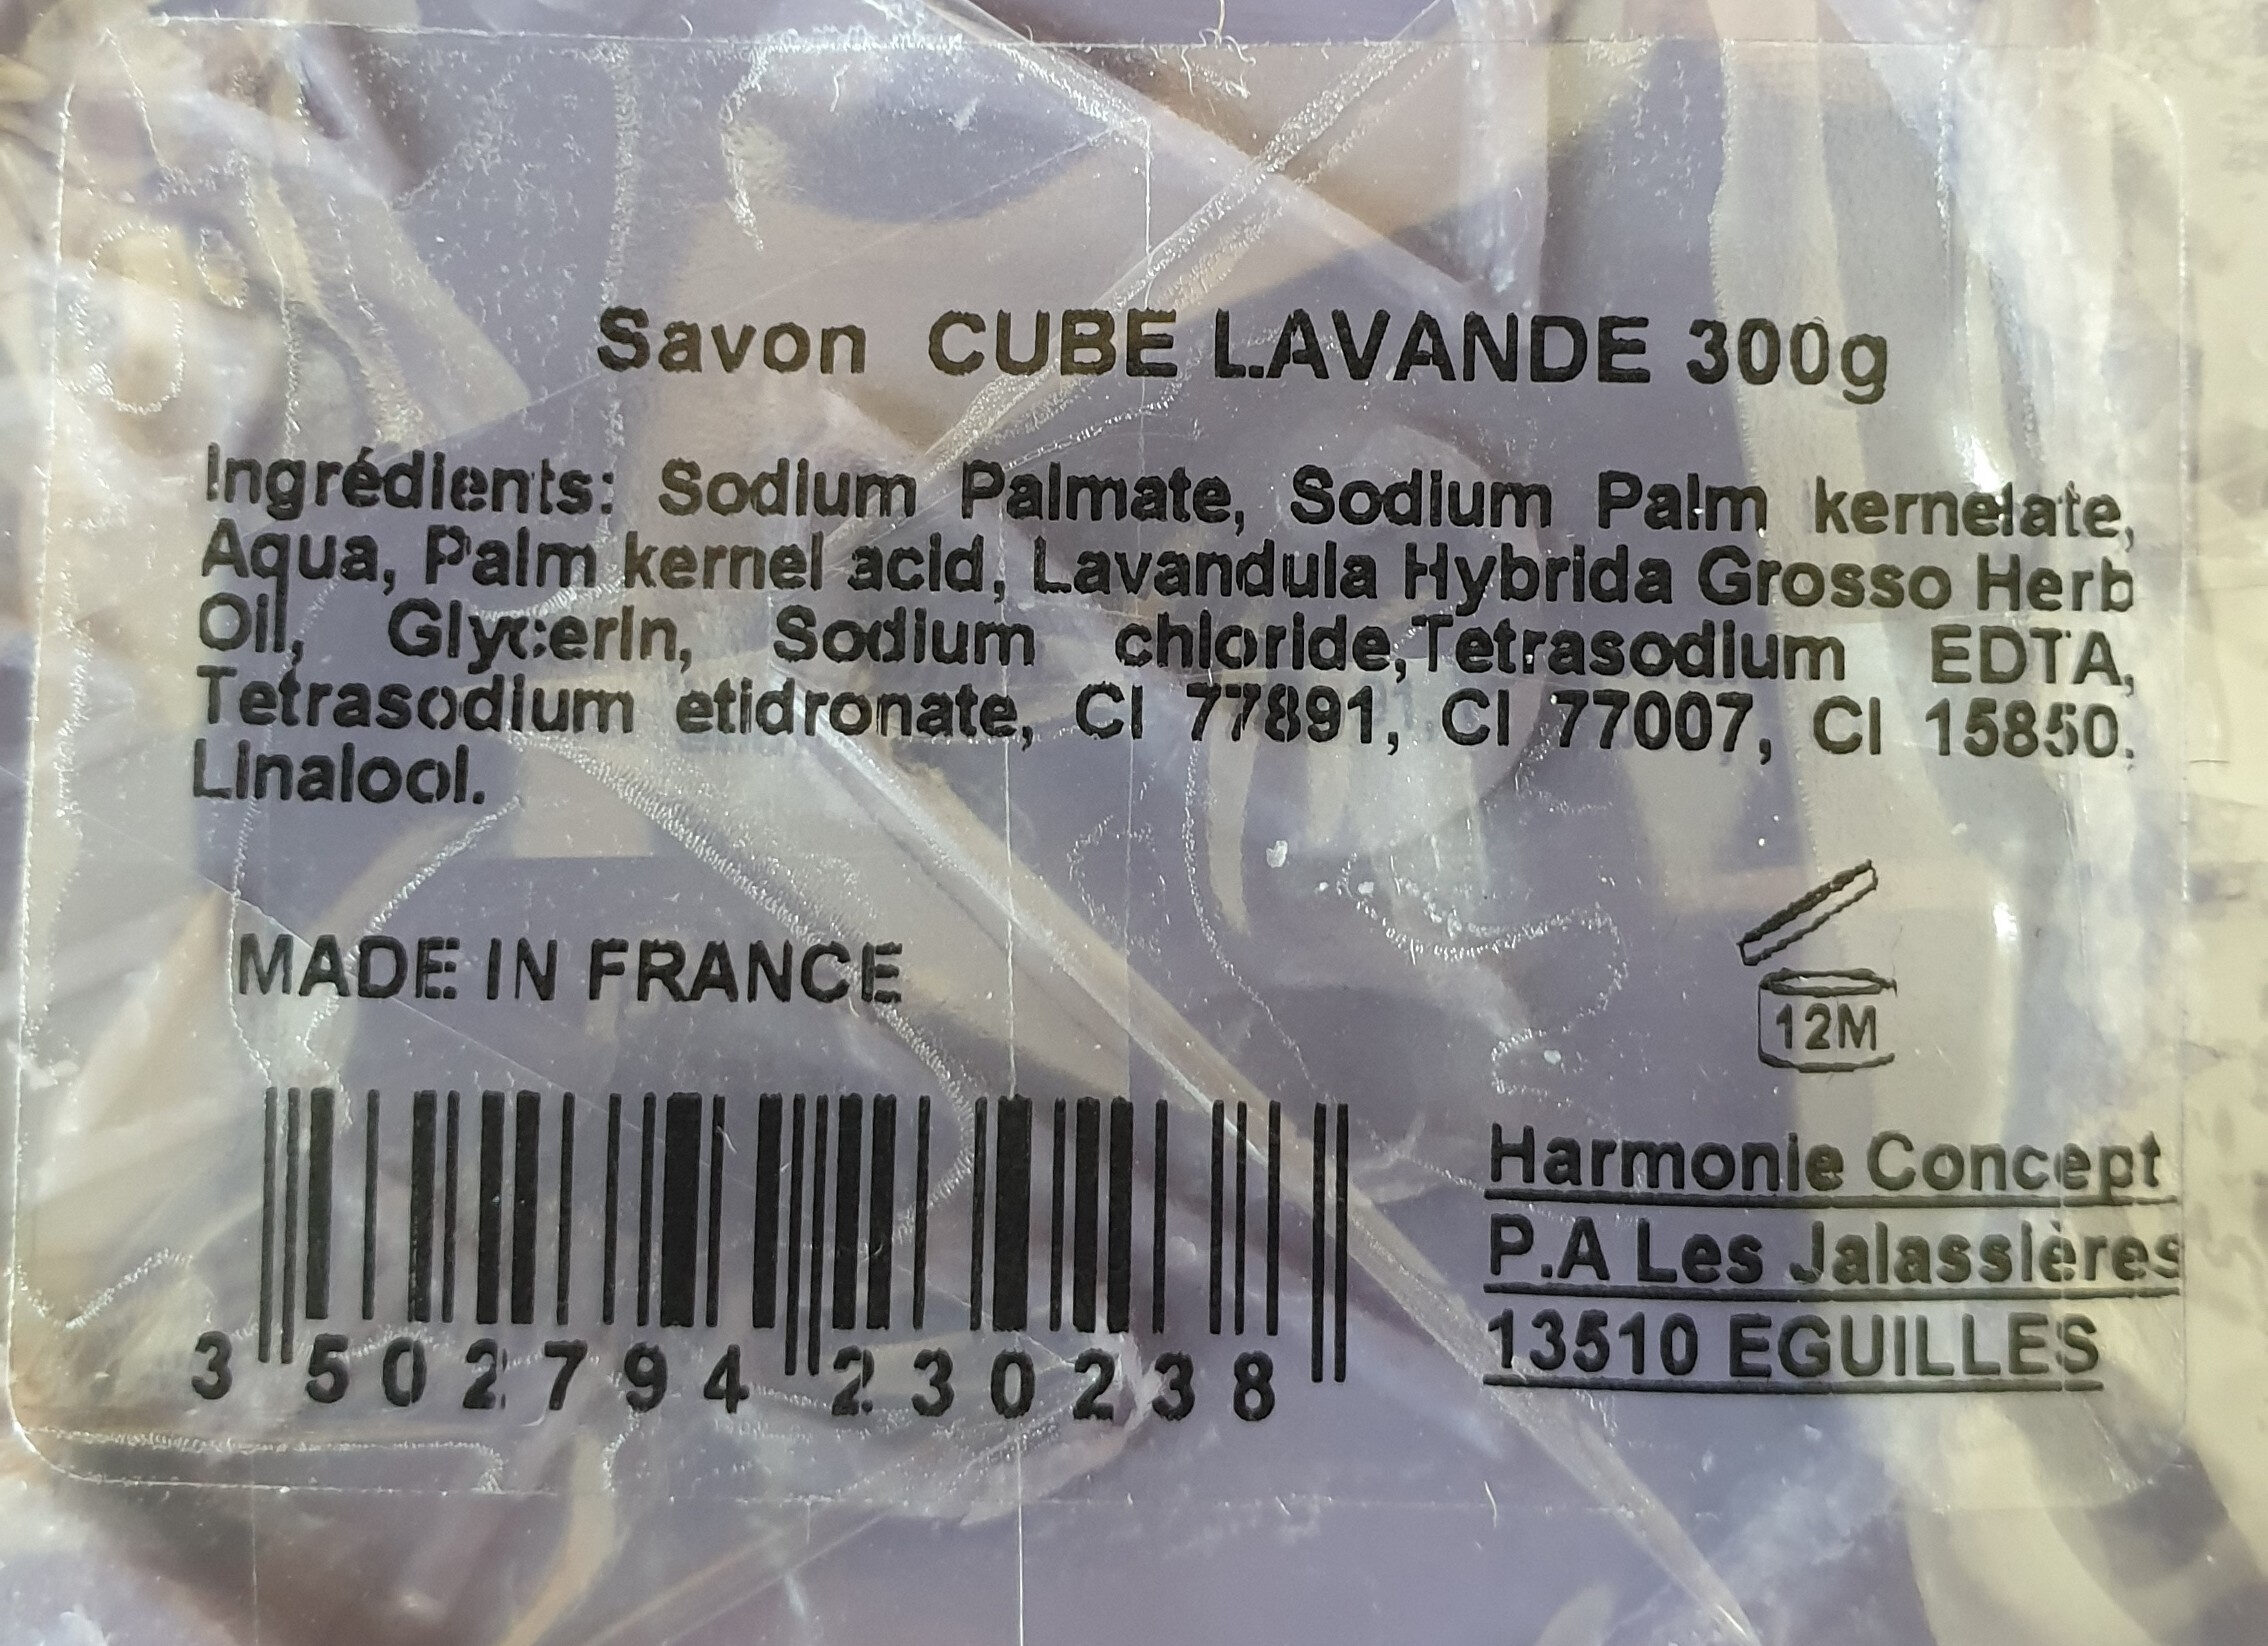 Savon cube lavande 300g - Ingrédients - fr